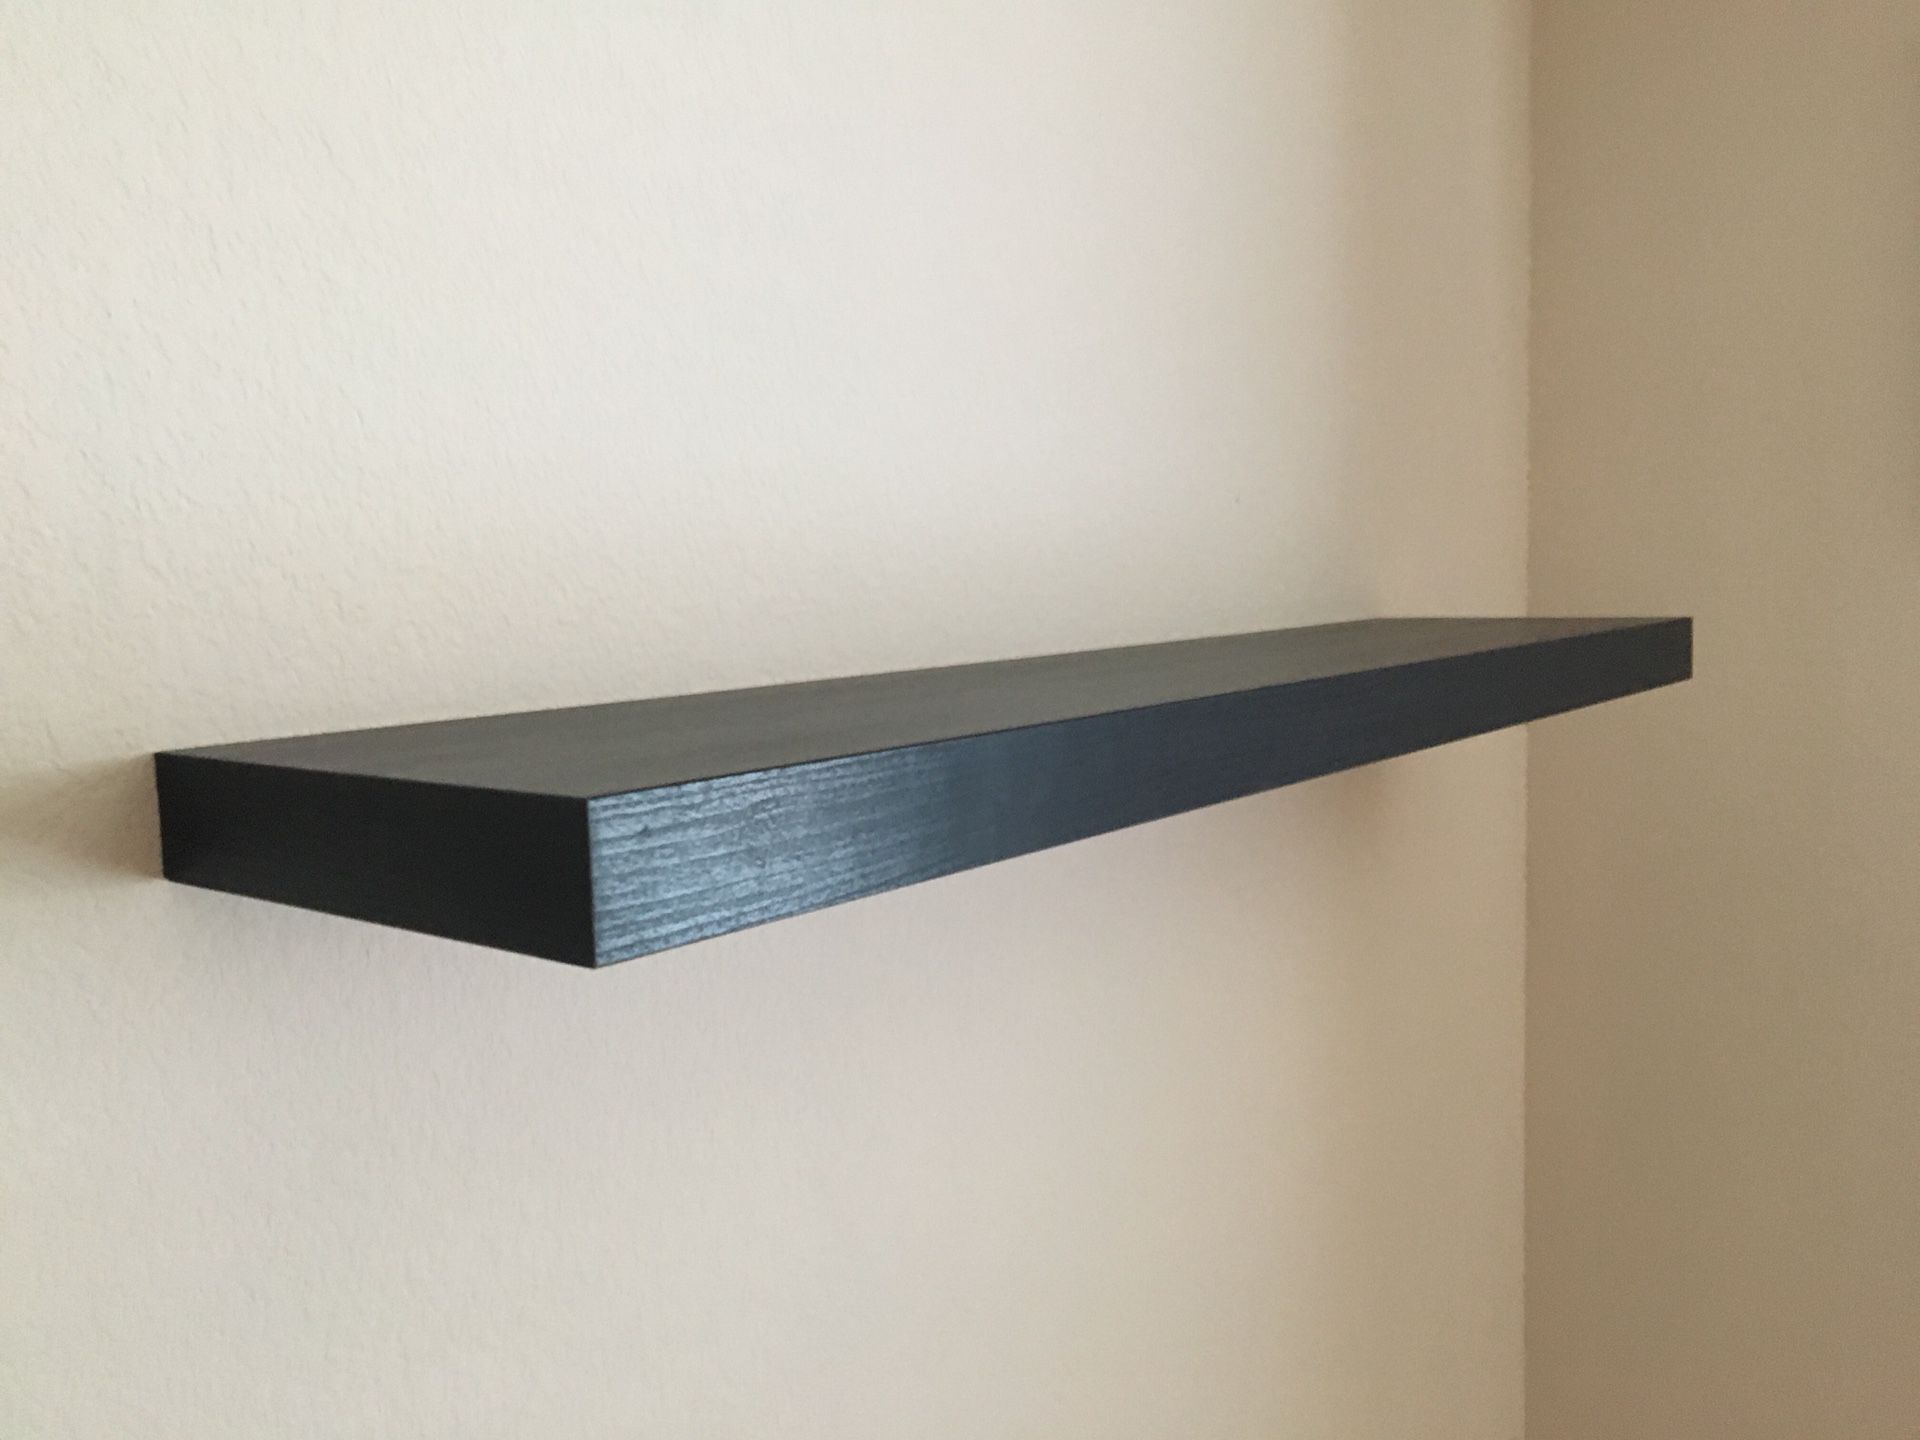 LACK wall shelf, black-brown, 110x26 cm (431/4x101/4) - IKEA CA